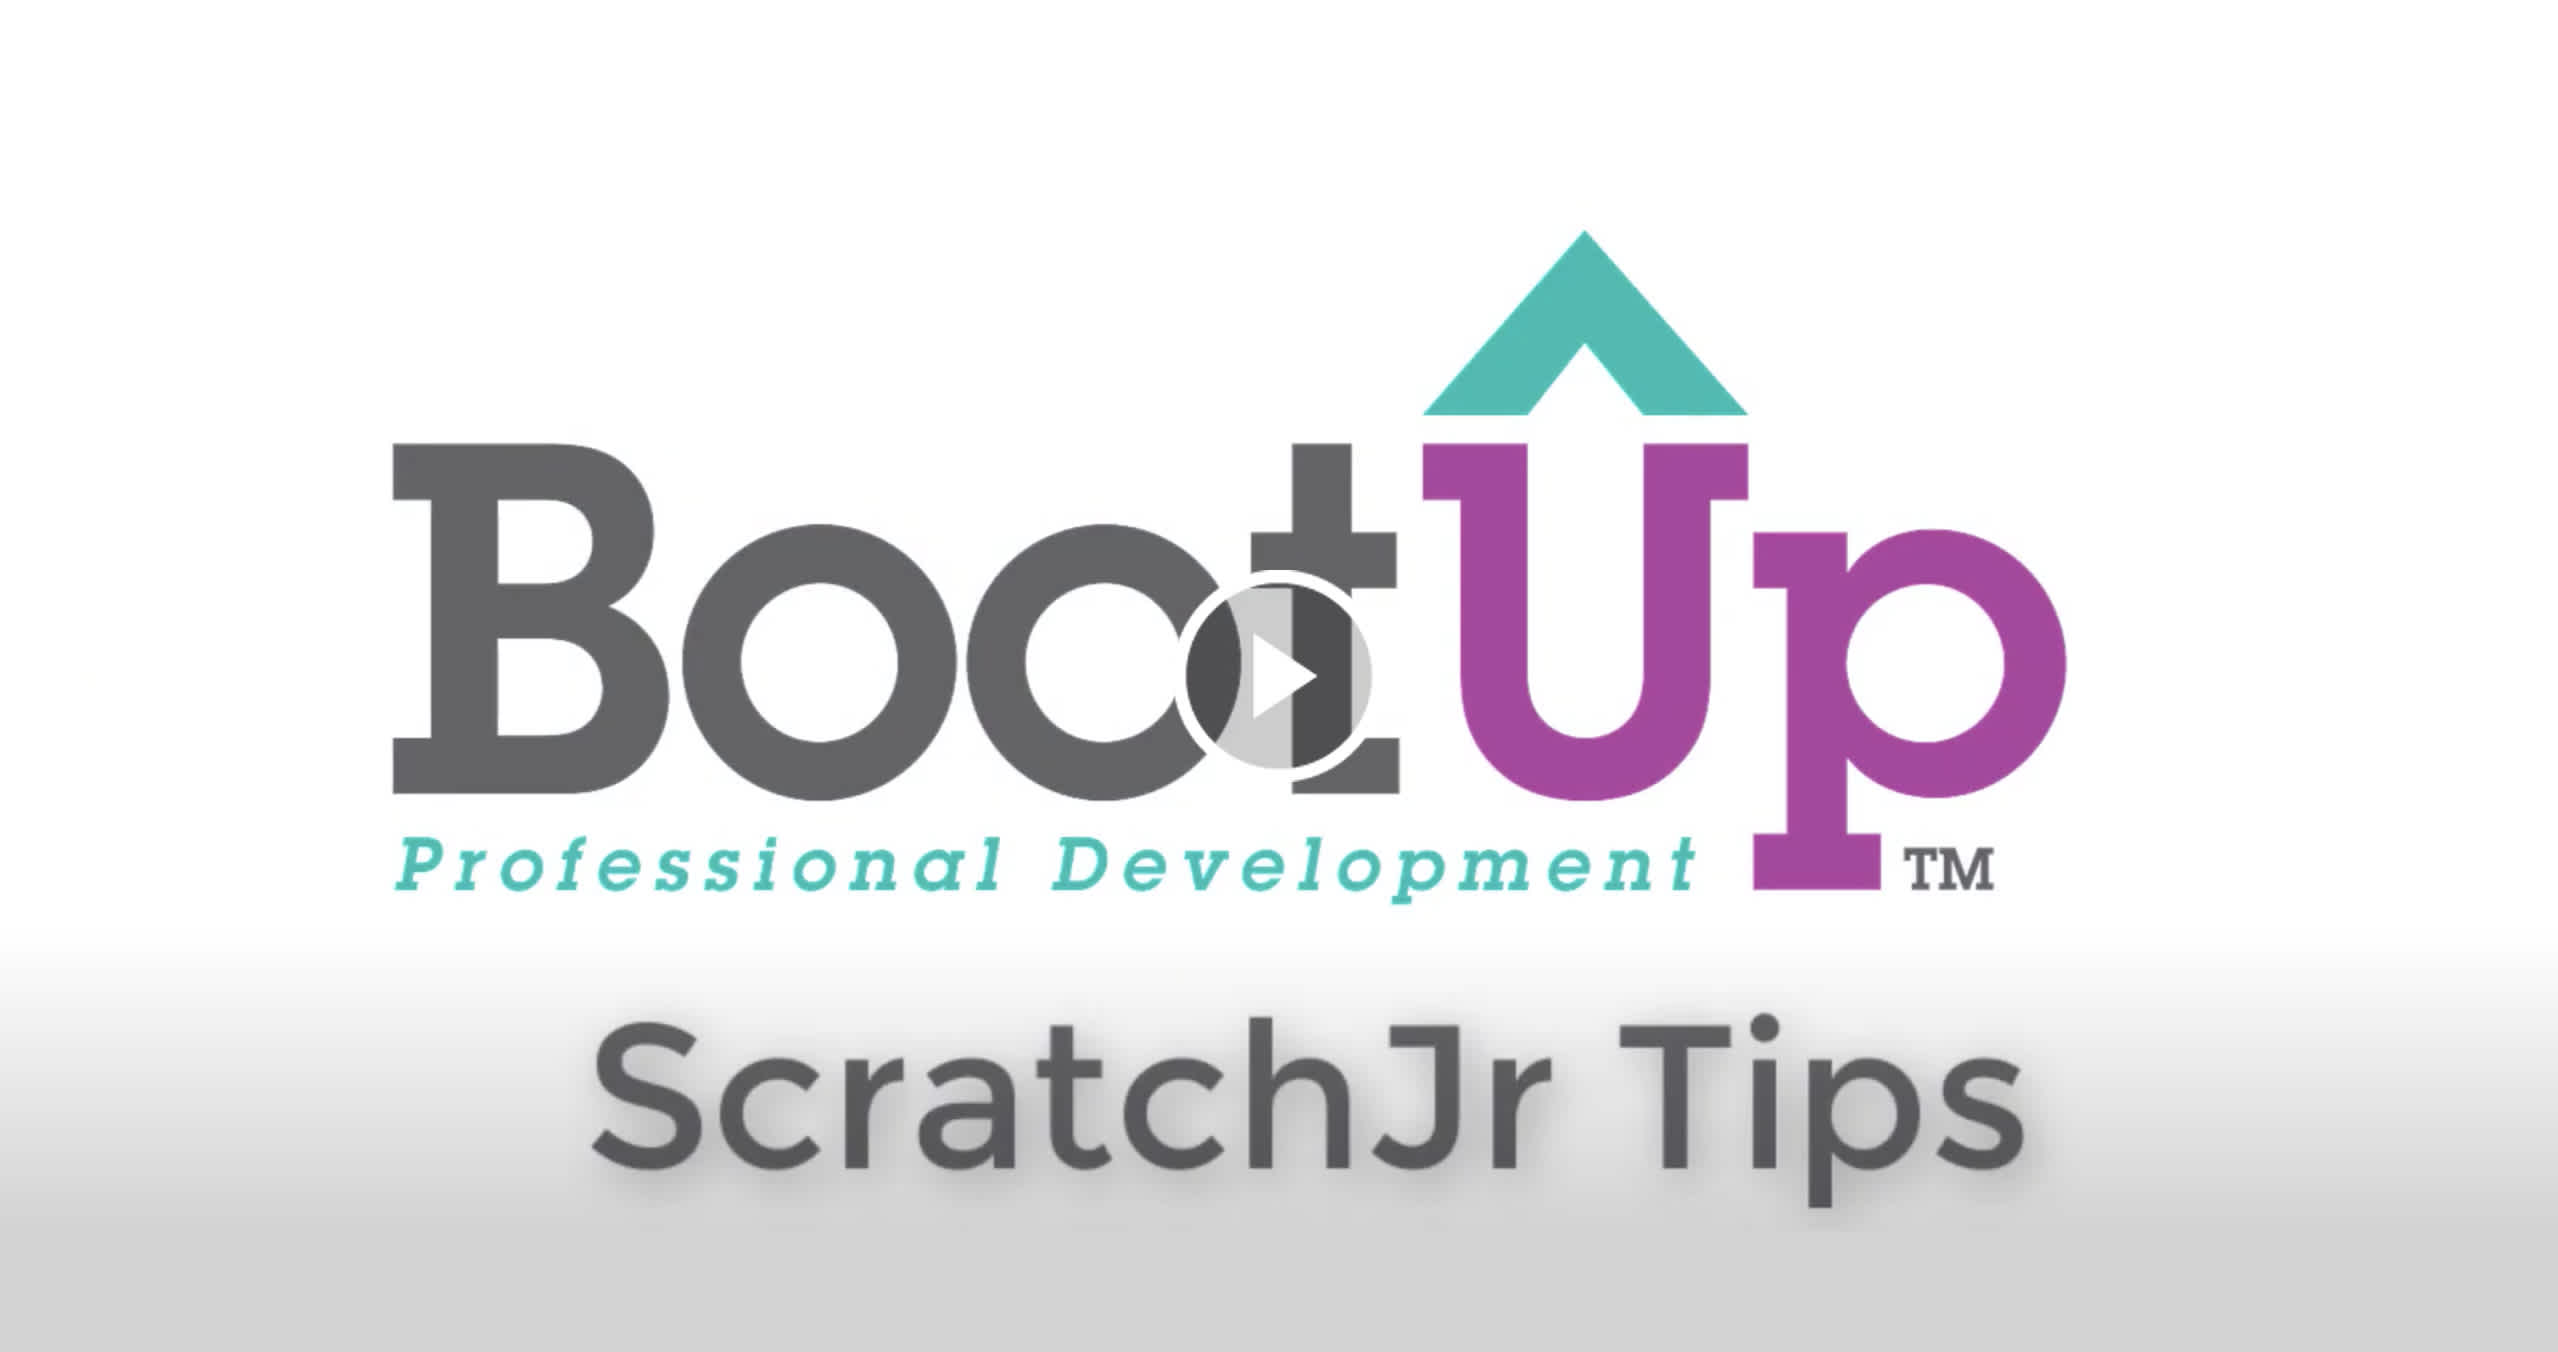 ScratchJr Tips